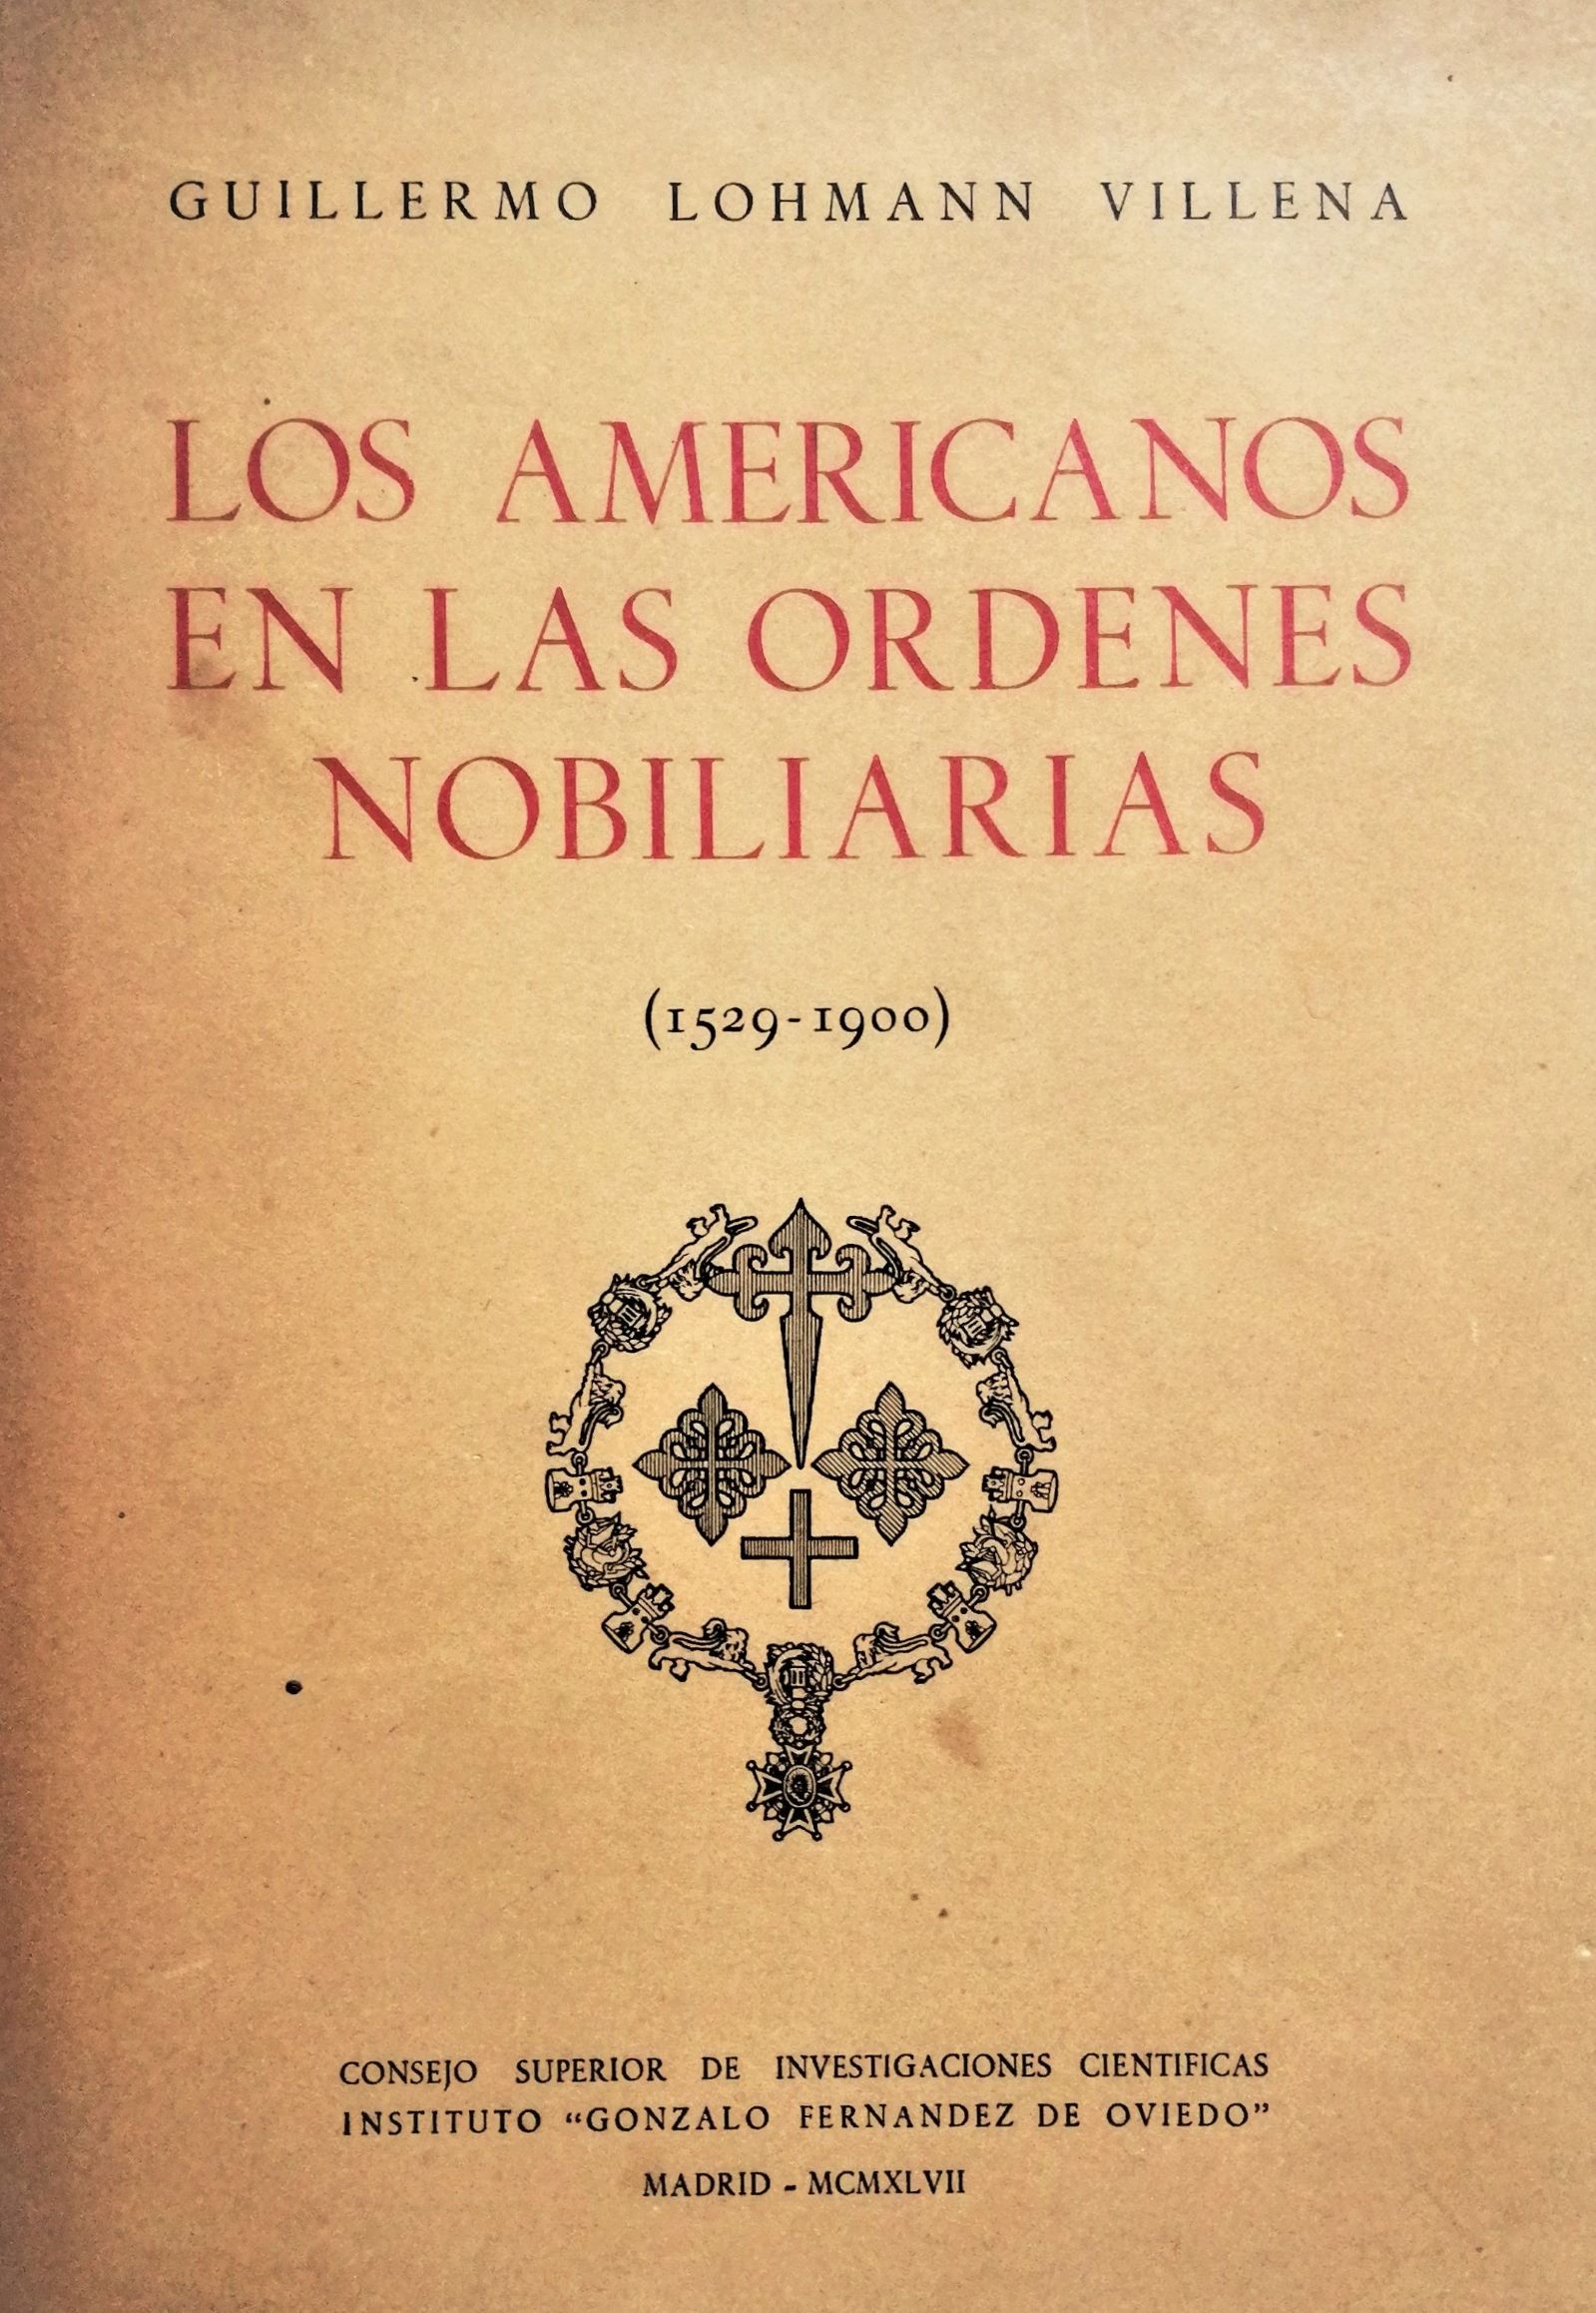 Guillermo Lohmann Villena - Los Americanos en las ordenes nobiliarias (1529 - 1900)